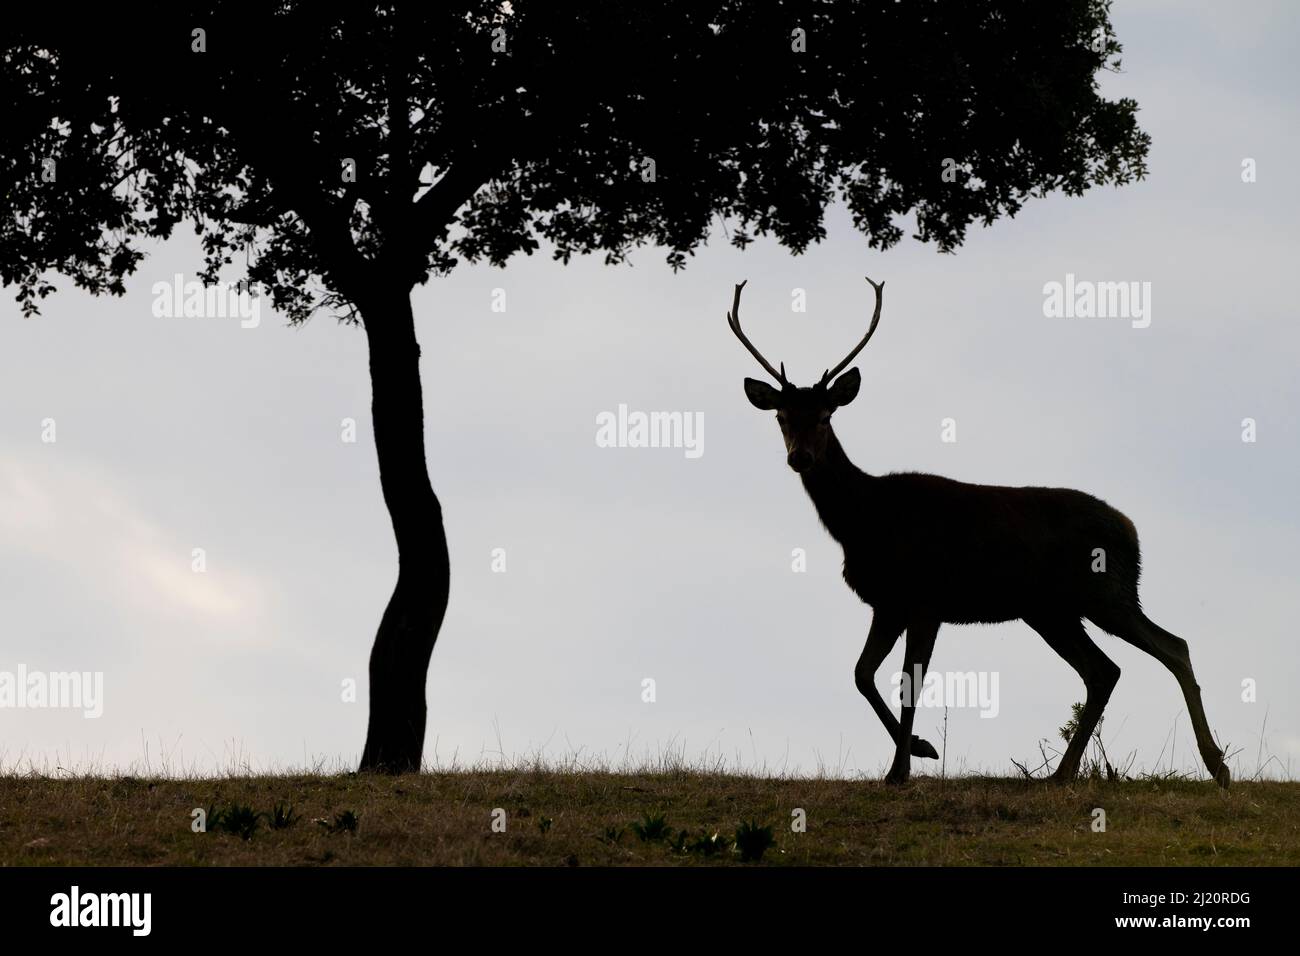 Cerf rouge (Cervus elaphus) et un chêne de Holm (Quercus ilex) silhoueted Parque Natural Sierra de Andujar, Andalousie, Espagne. Janvier. Banque D'Images